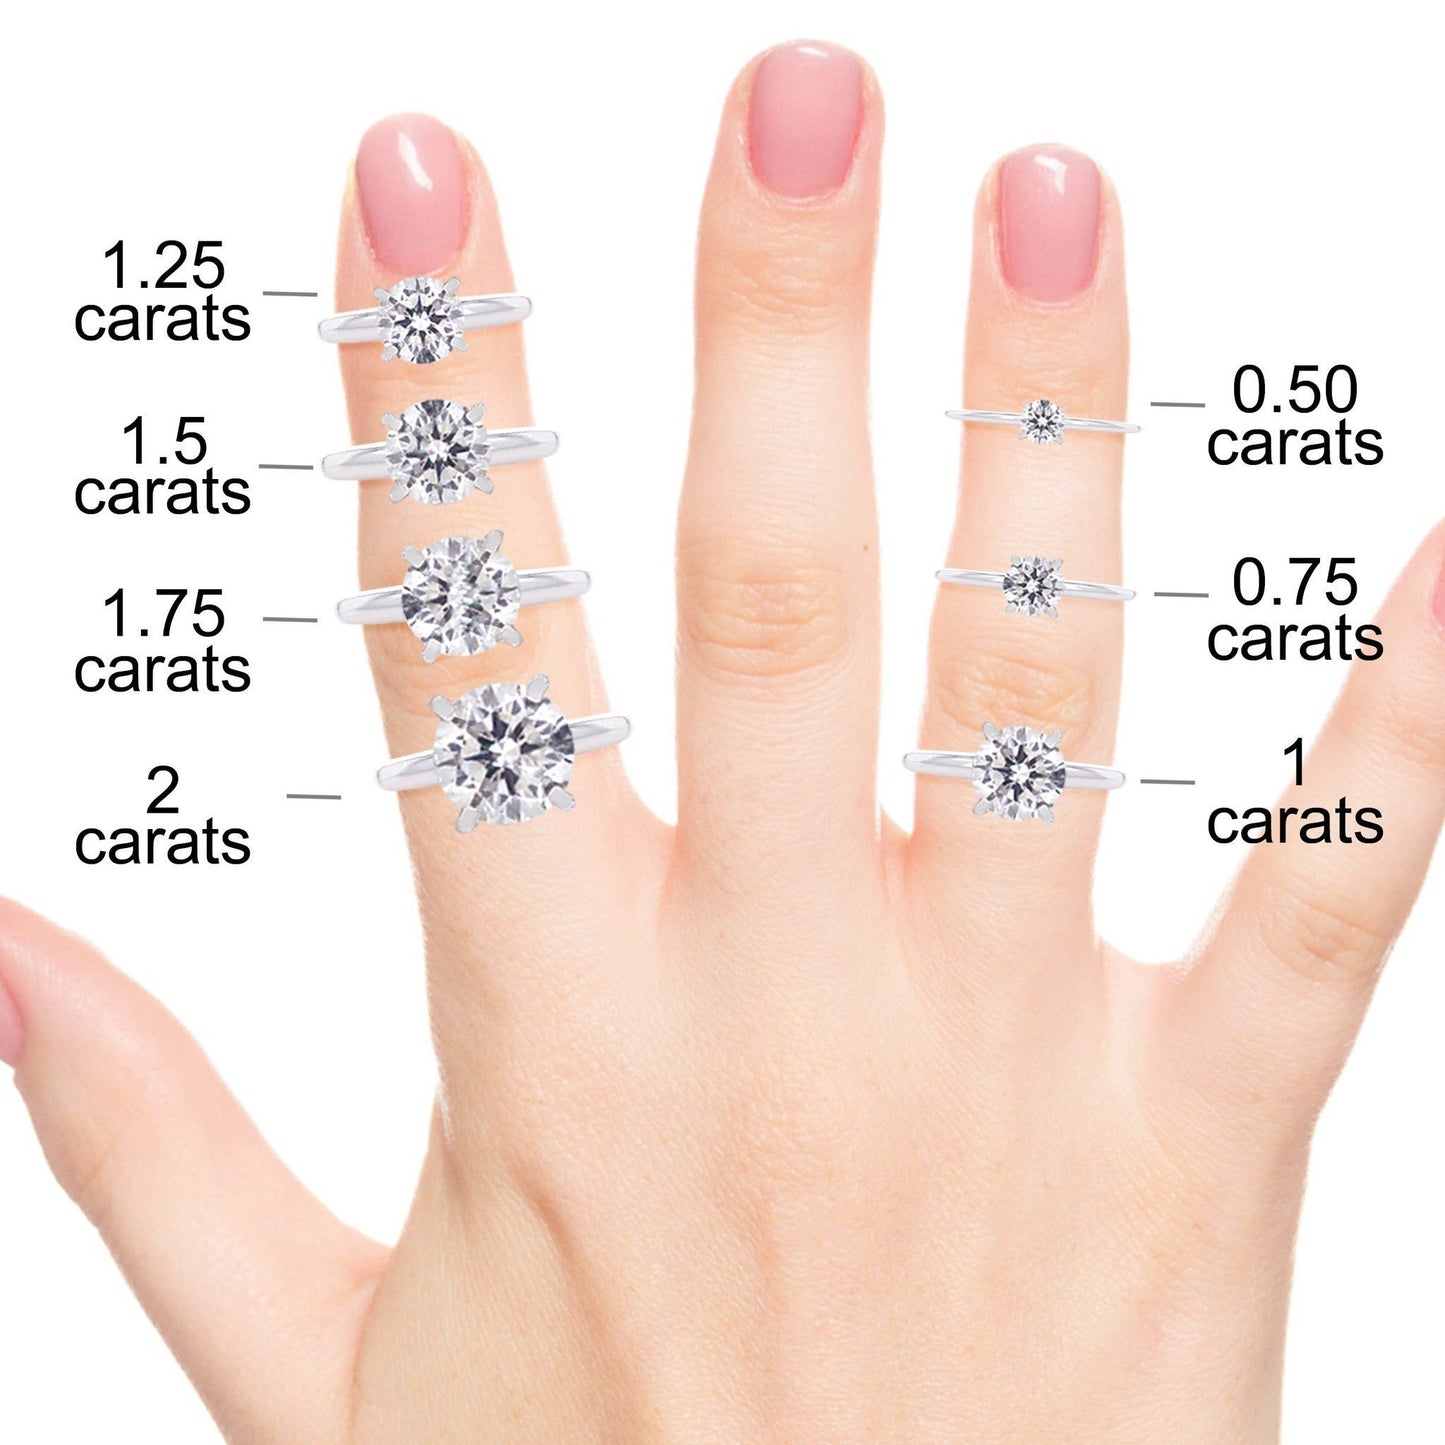 Round Diamond Solitaire Engagement Ring Alexa 14K White Gold engagement rings imaginediamonds 